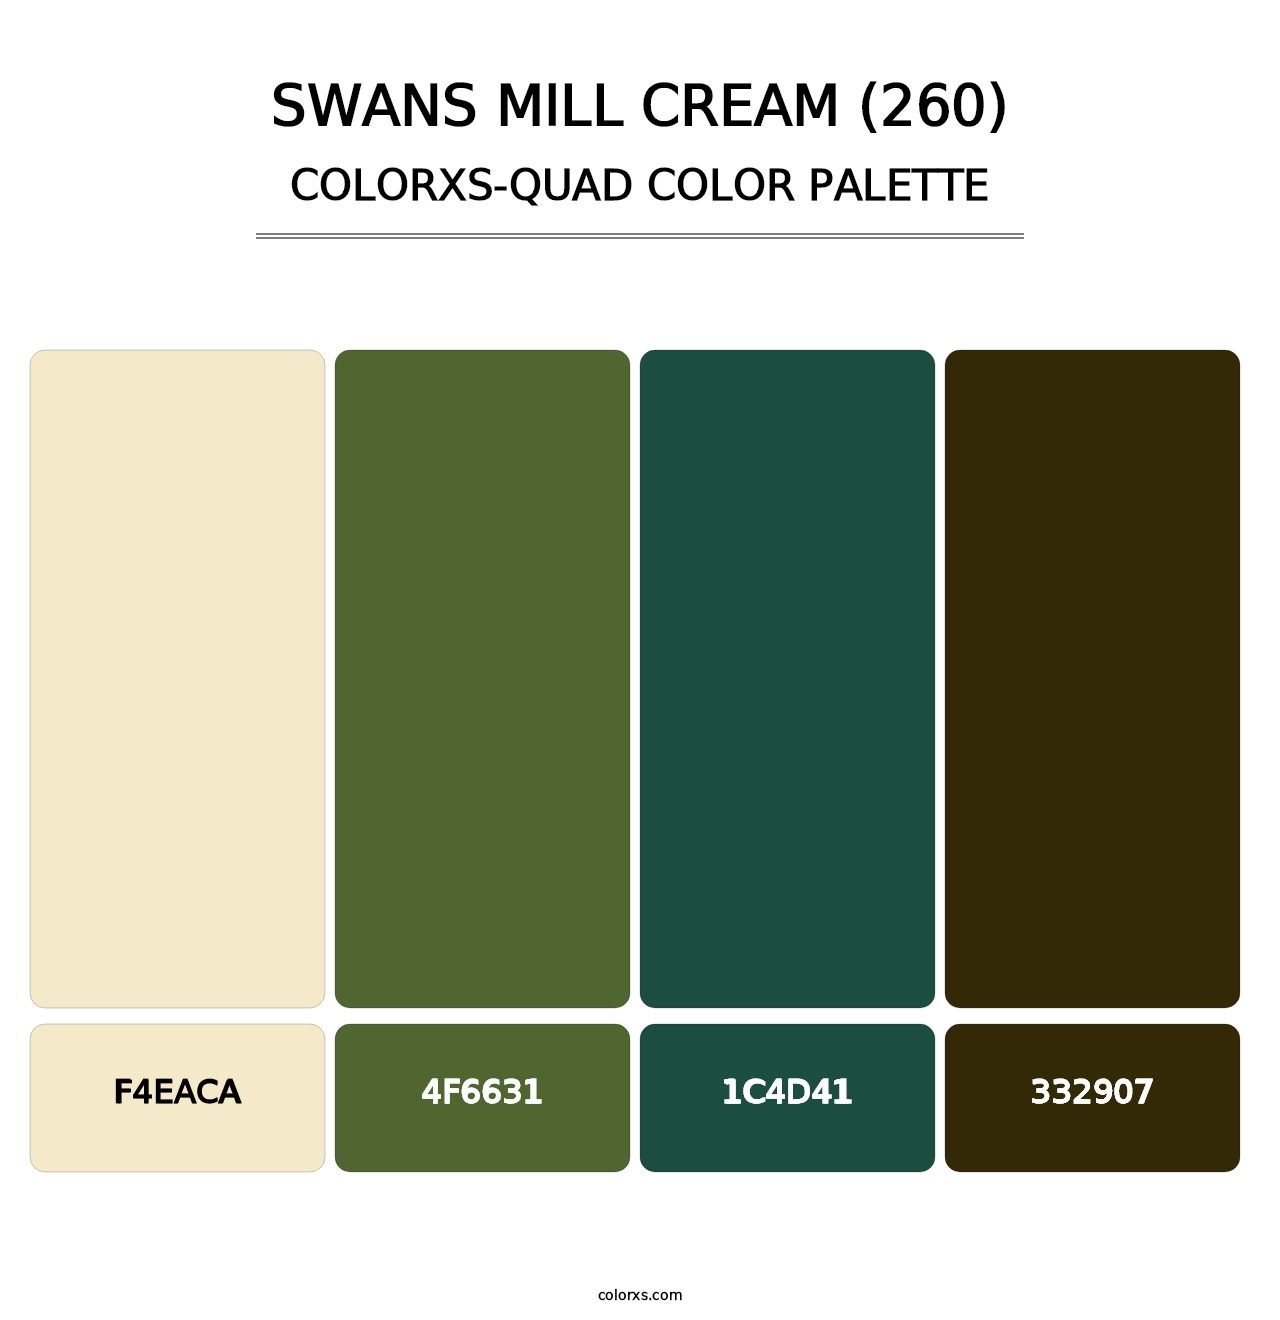 Swans Mill Cream (260) - Colorxs Quad Palette